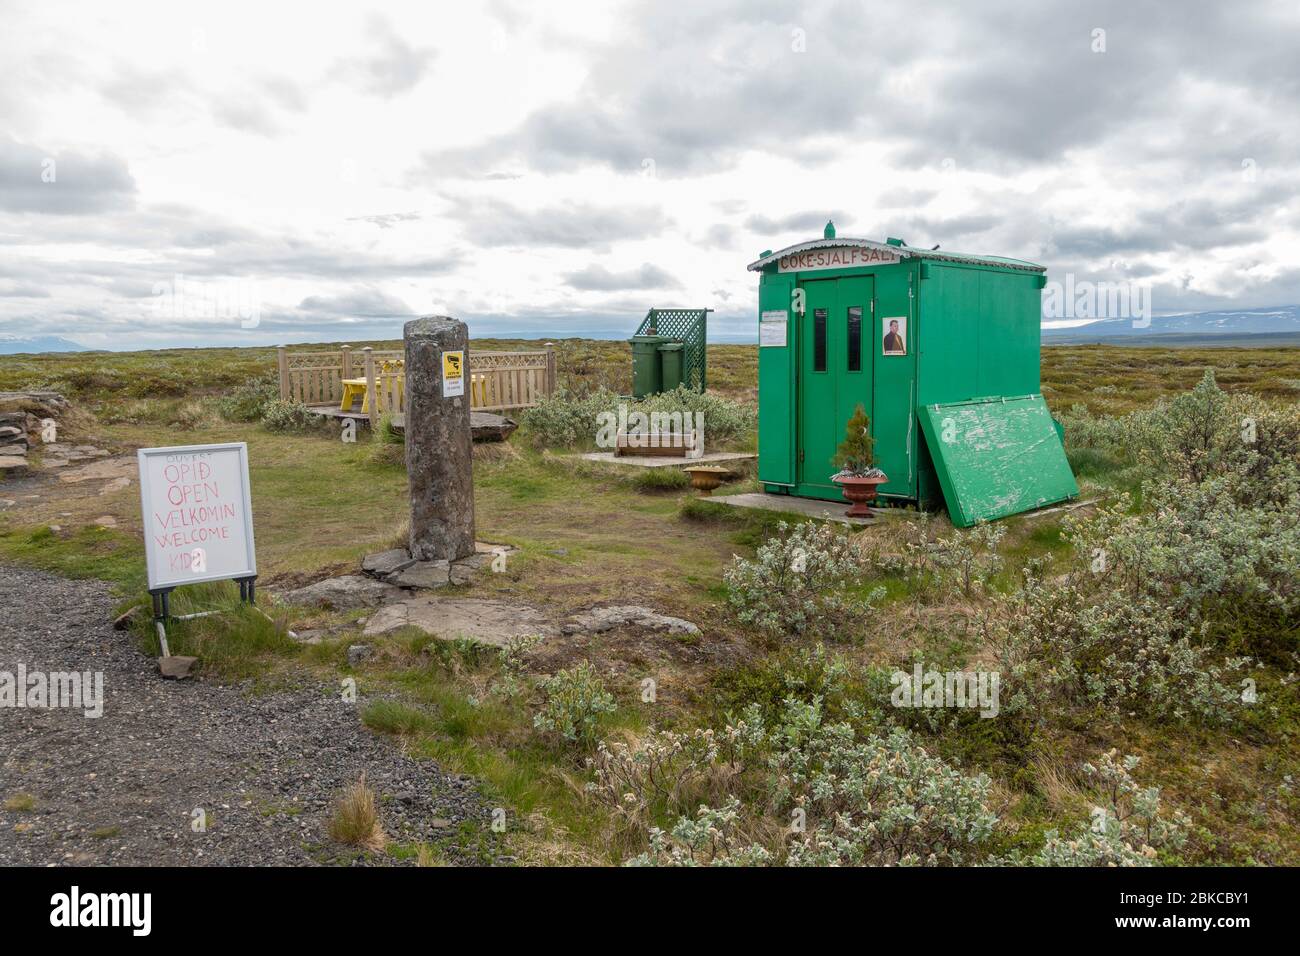 Coke Sjalfsali, distributore automatico a energia solare della casa verde, fermata sulla Route 94, Borgarfjarðarvegur, nel nord-est dell'Islanda. Foto Stock